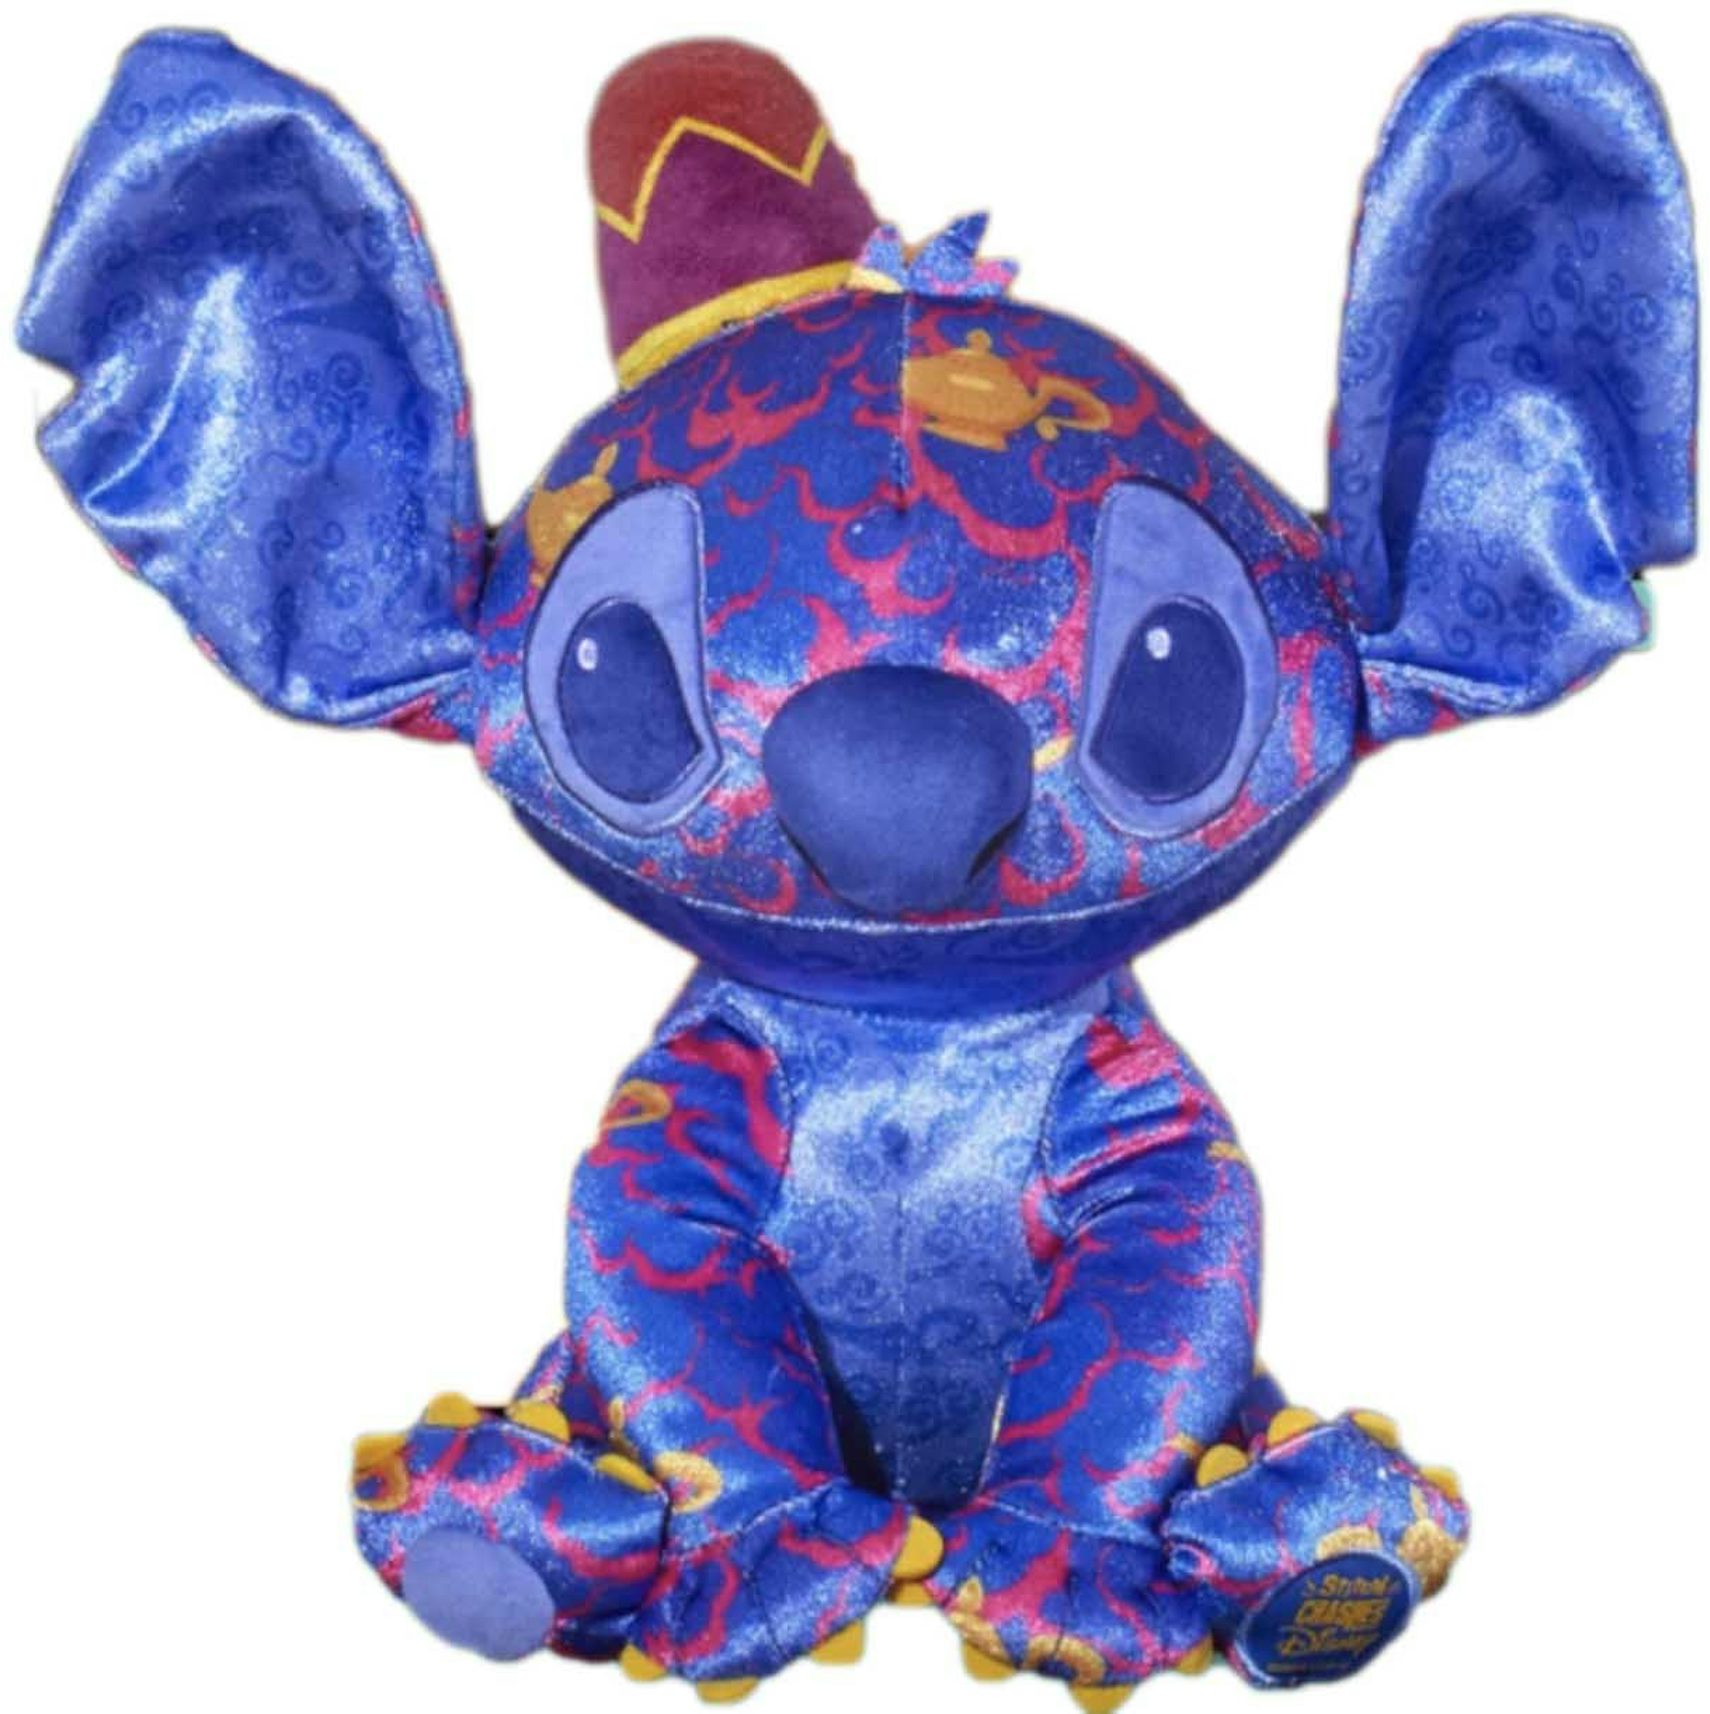 Pochette Stitch Disney - Disney